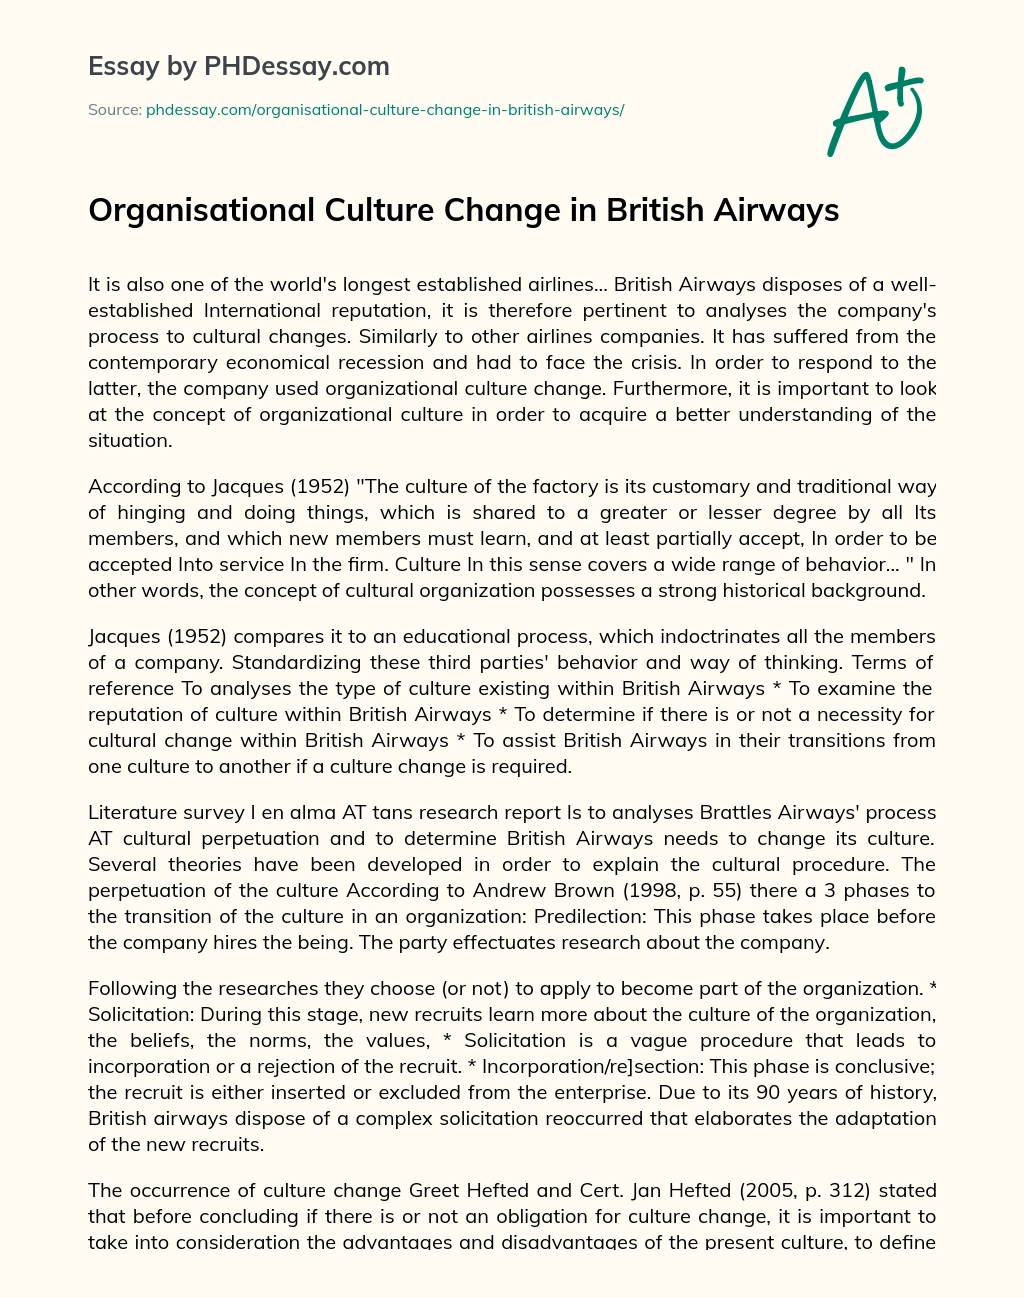 Organisational Culture Change in British Airways essay